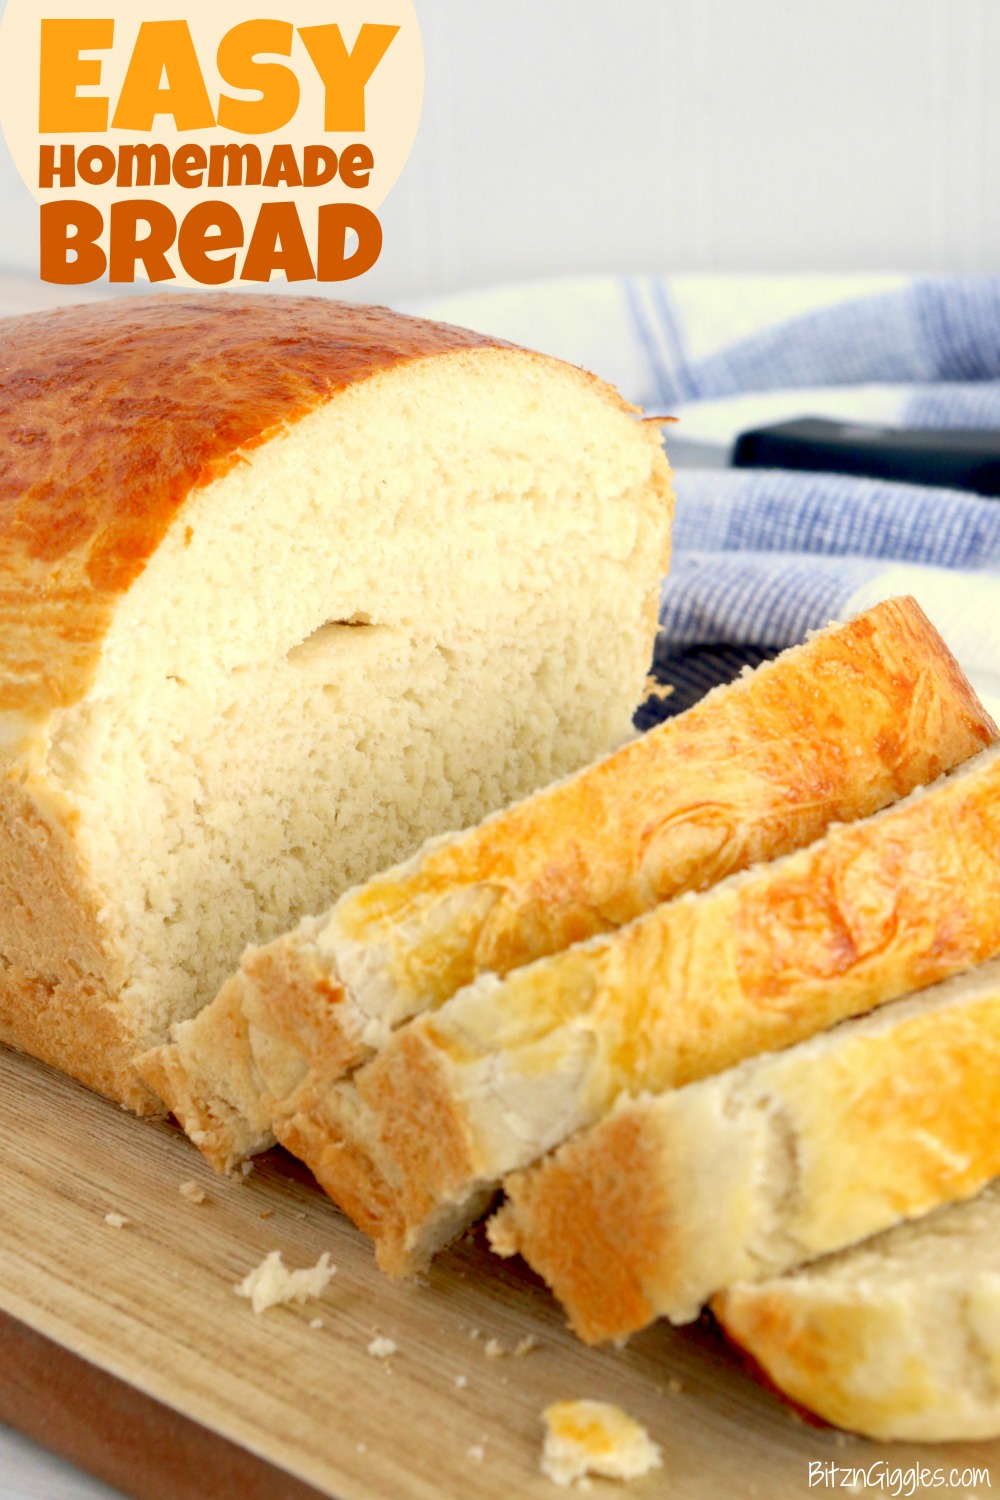 https://bitzngiggles.com/wp-content/uploads/2020/04/Easy-Homemade-Bread-Pinterest2.jpg